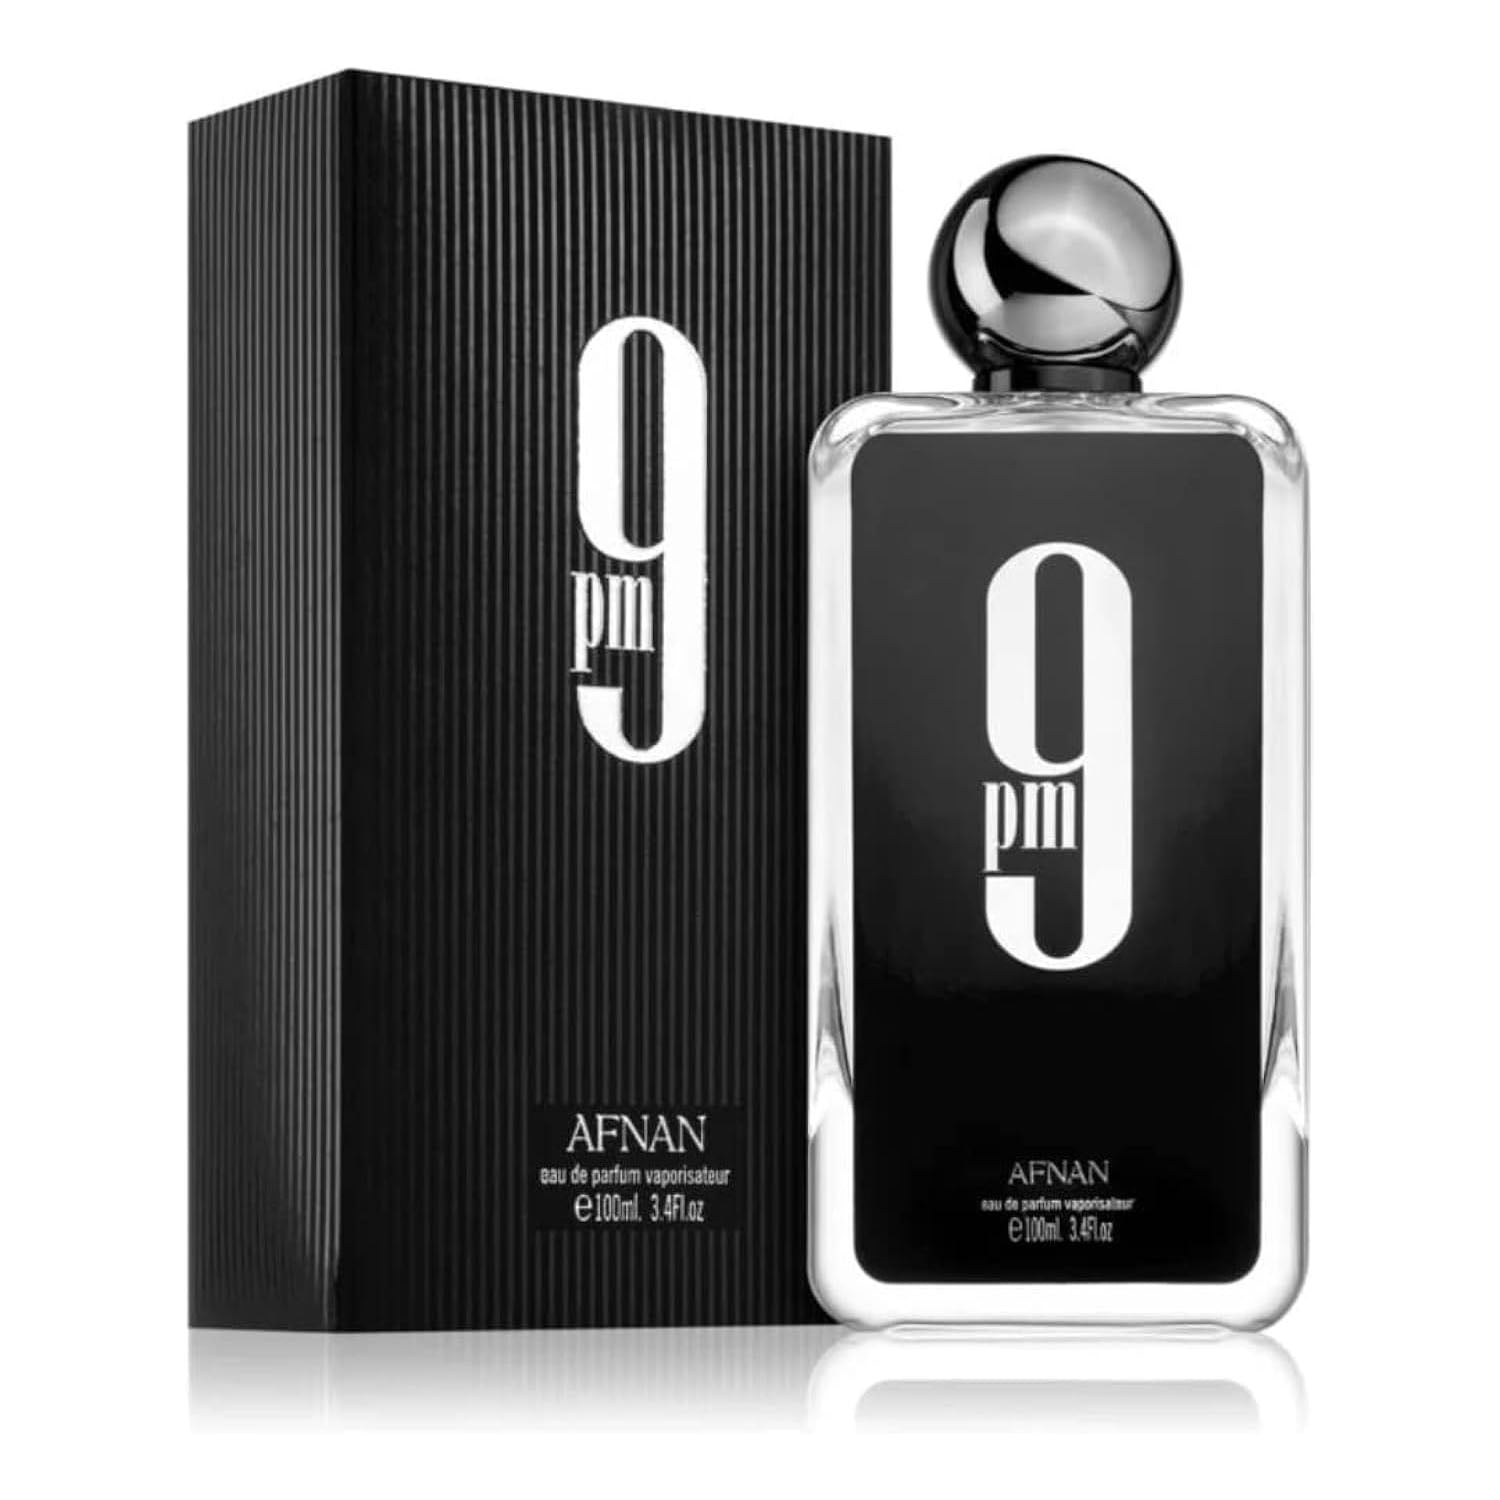 Afnan 9 PM Eau de Parfum Spray 100 ml for Men (Black Box)